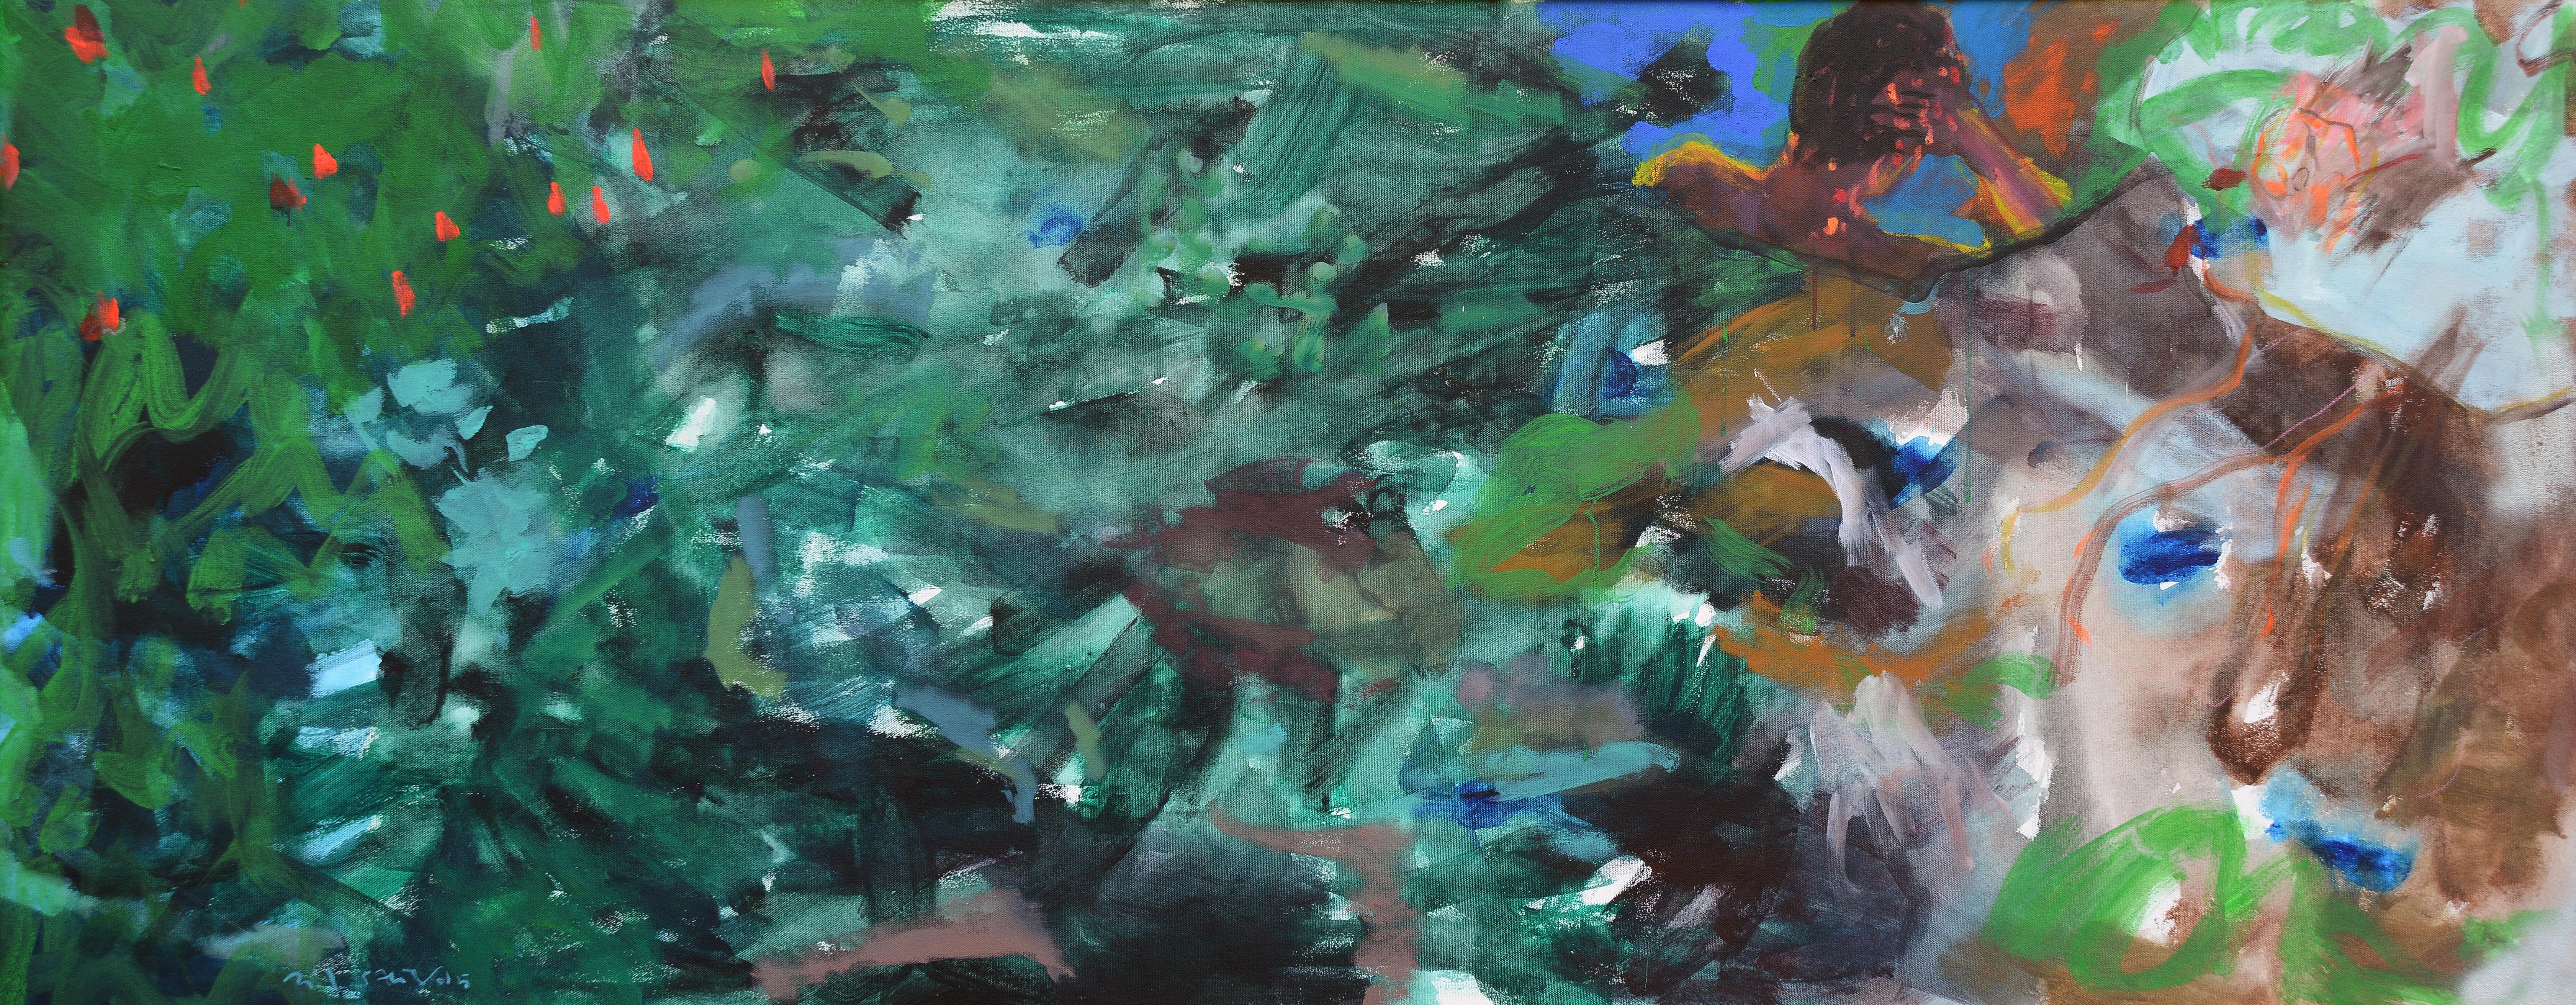 Mevsim Kokusu, 2005, Tuval üzerine yağlıboya, Oil on canvas, 80x200 cm